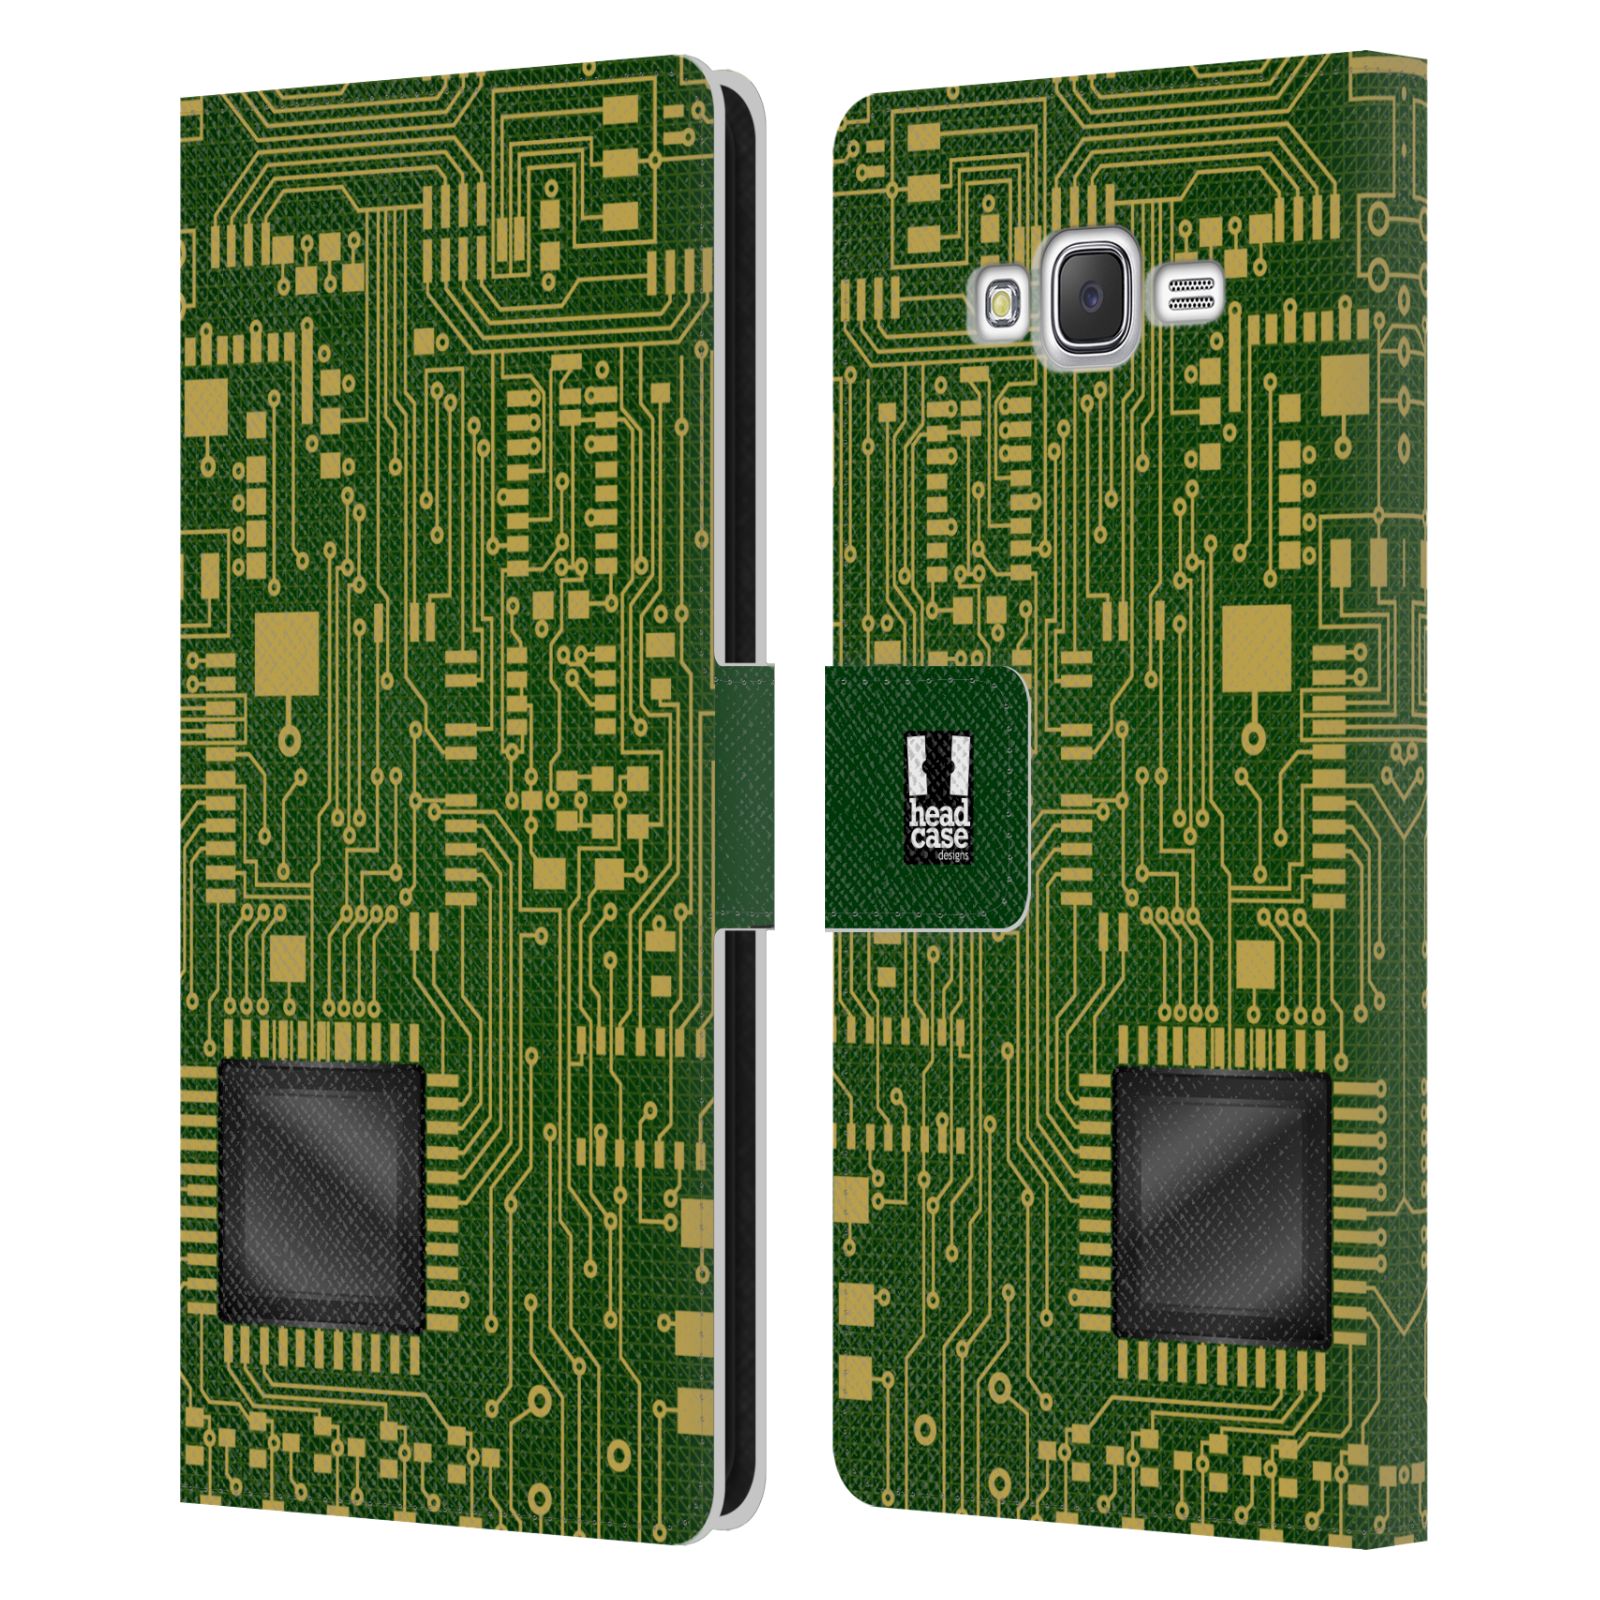 HEAD CASE Flipové pouzdro pro mobil Samsung Galaxy J7, J700 počítač základní deska zelená barva velký čip